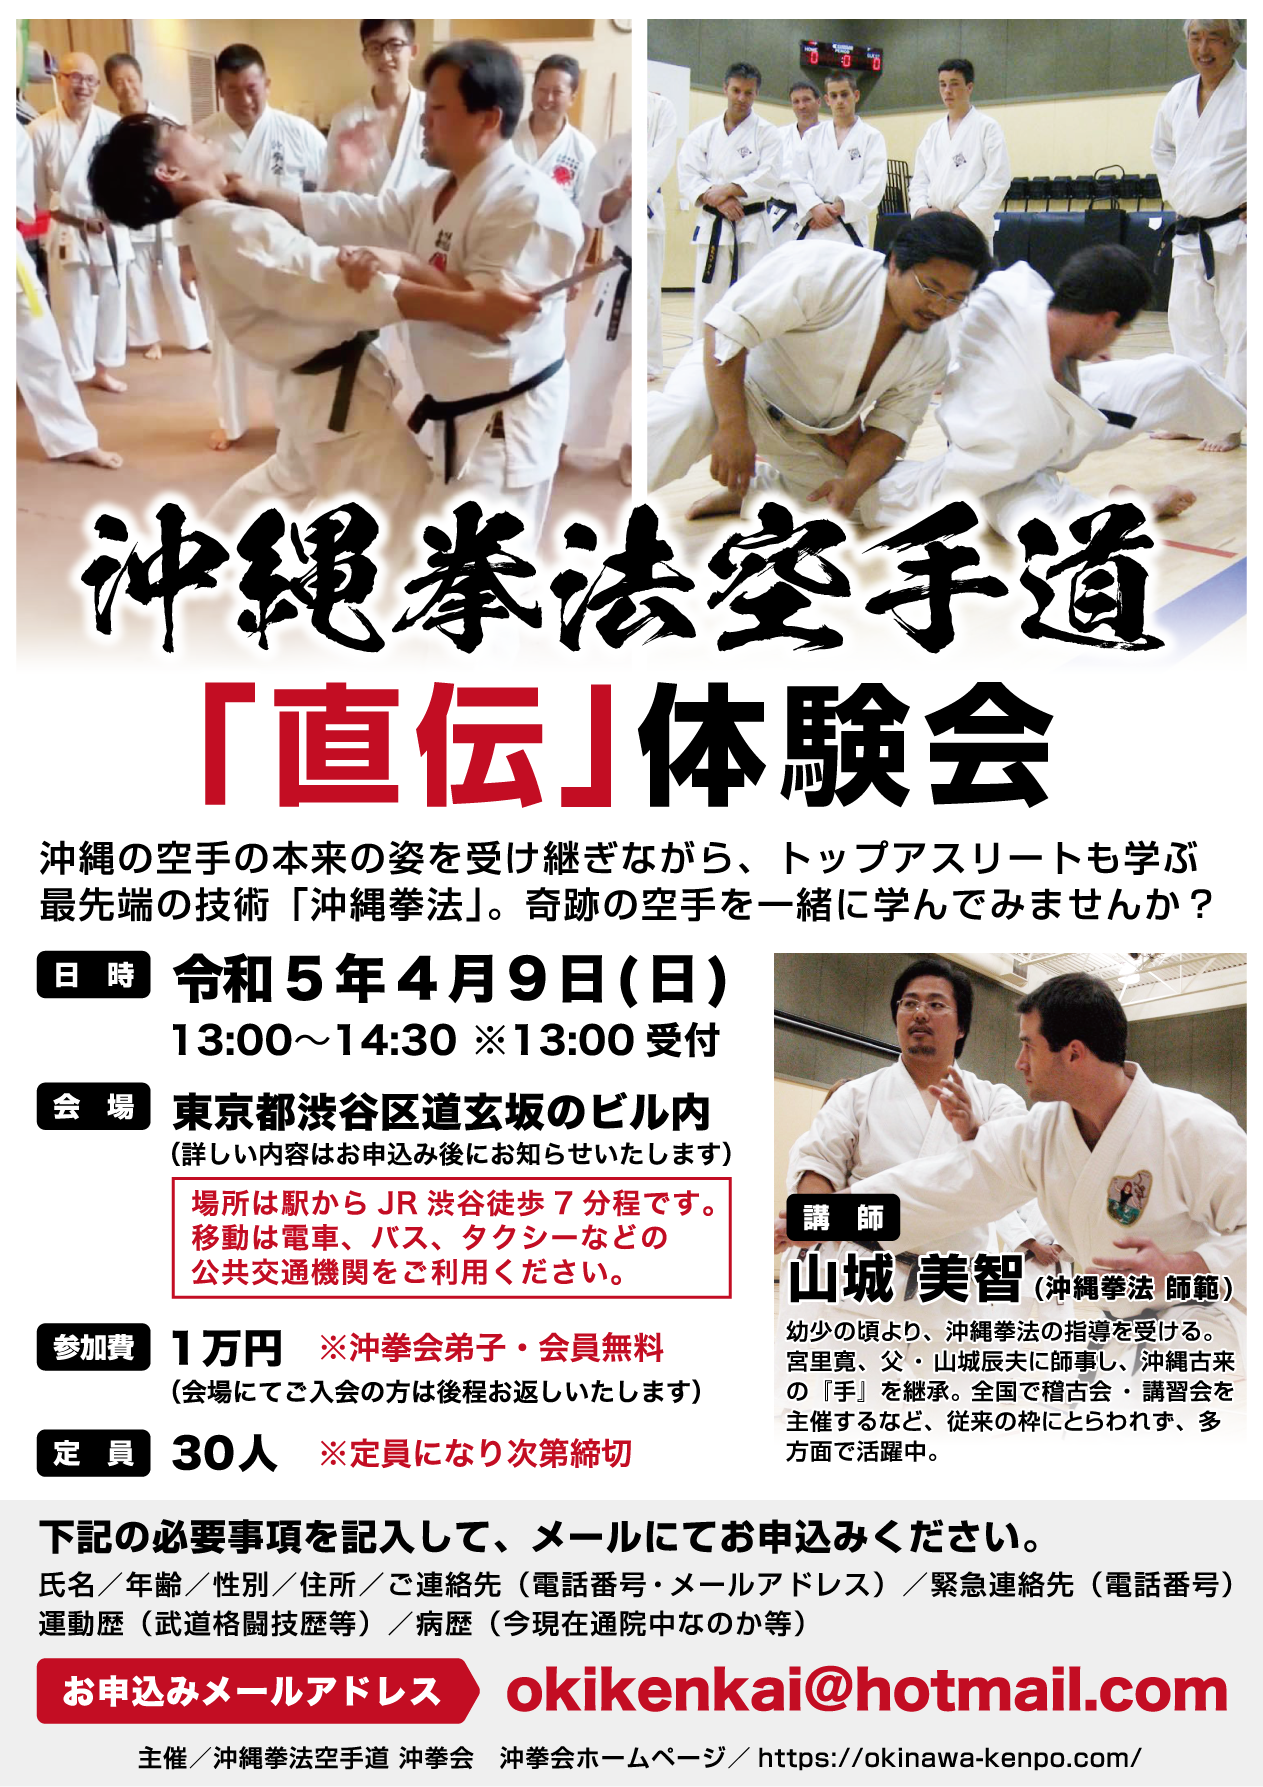 2023年4月9日(日) 沖縄拳法空手道 山城美智六代目師範による直伝体験会のお知らせ